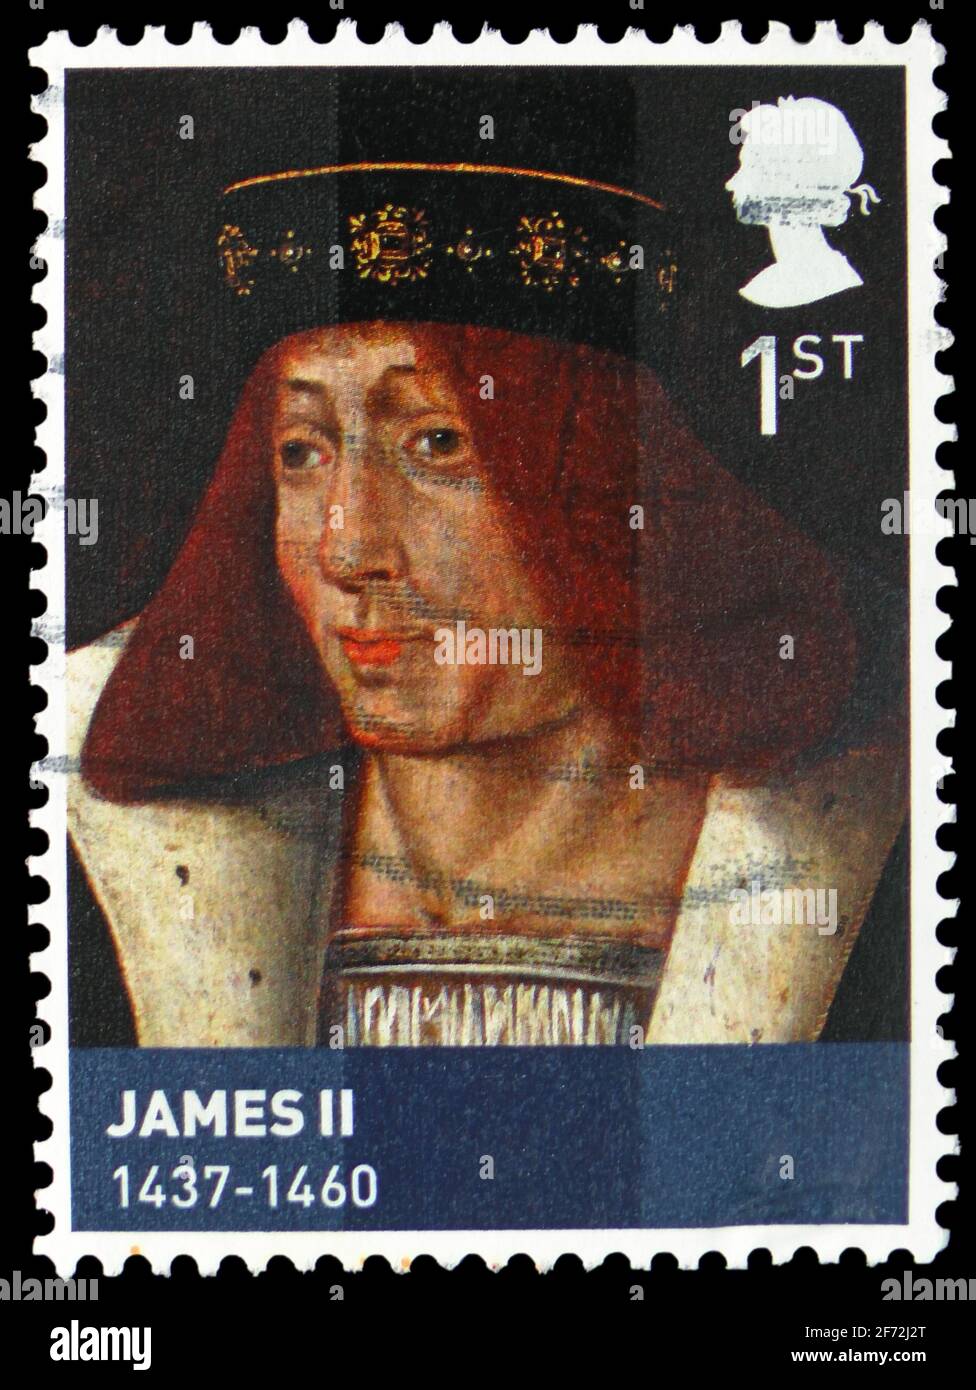 MOSCOU, RUSSIE - 22 DÉCEMBRE 2020: Timbre-poste imprimé au Royaume-Uni montre le roi James II d'Écosse (1437-60), série Age of the Stuarts, c Banque D'Images